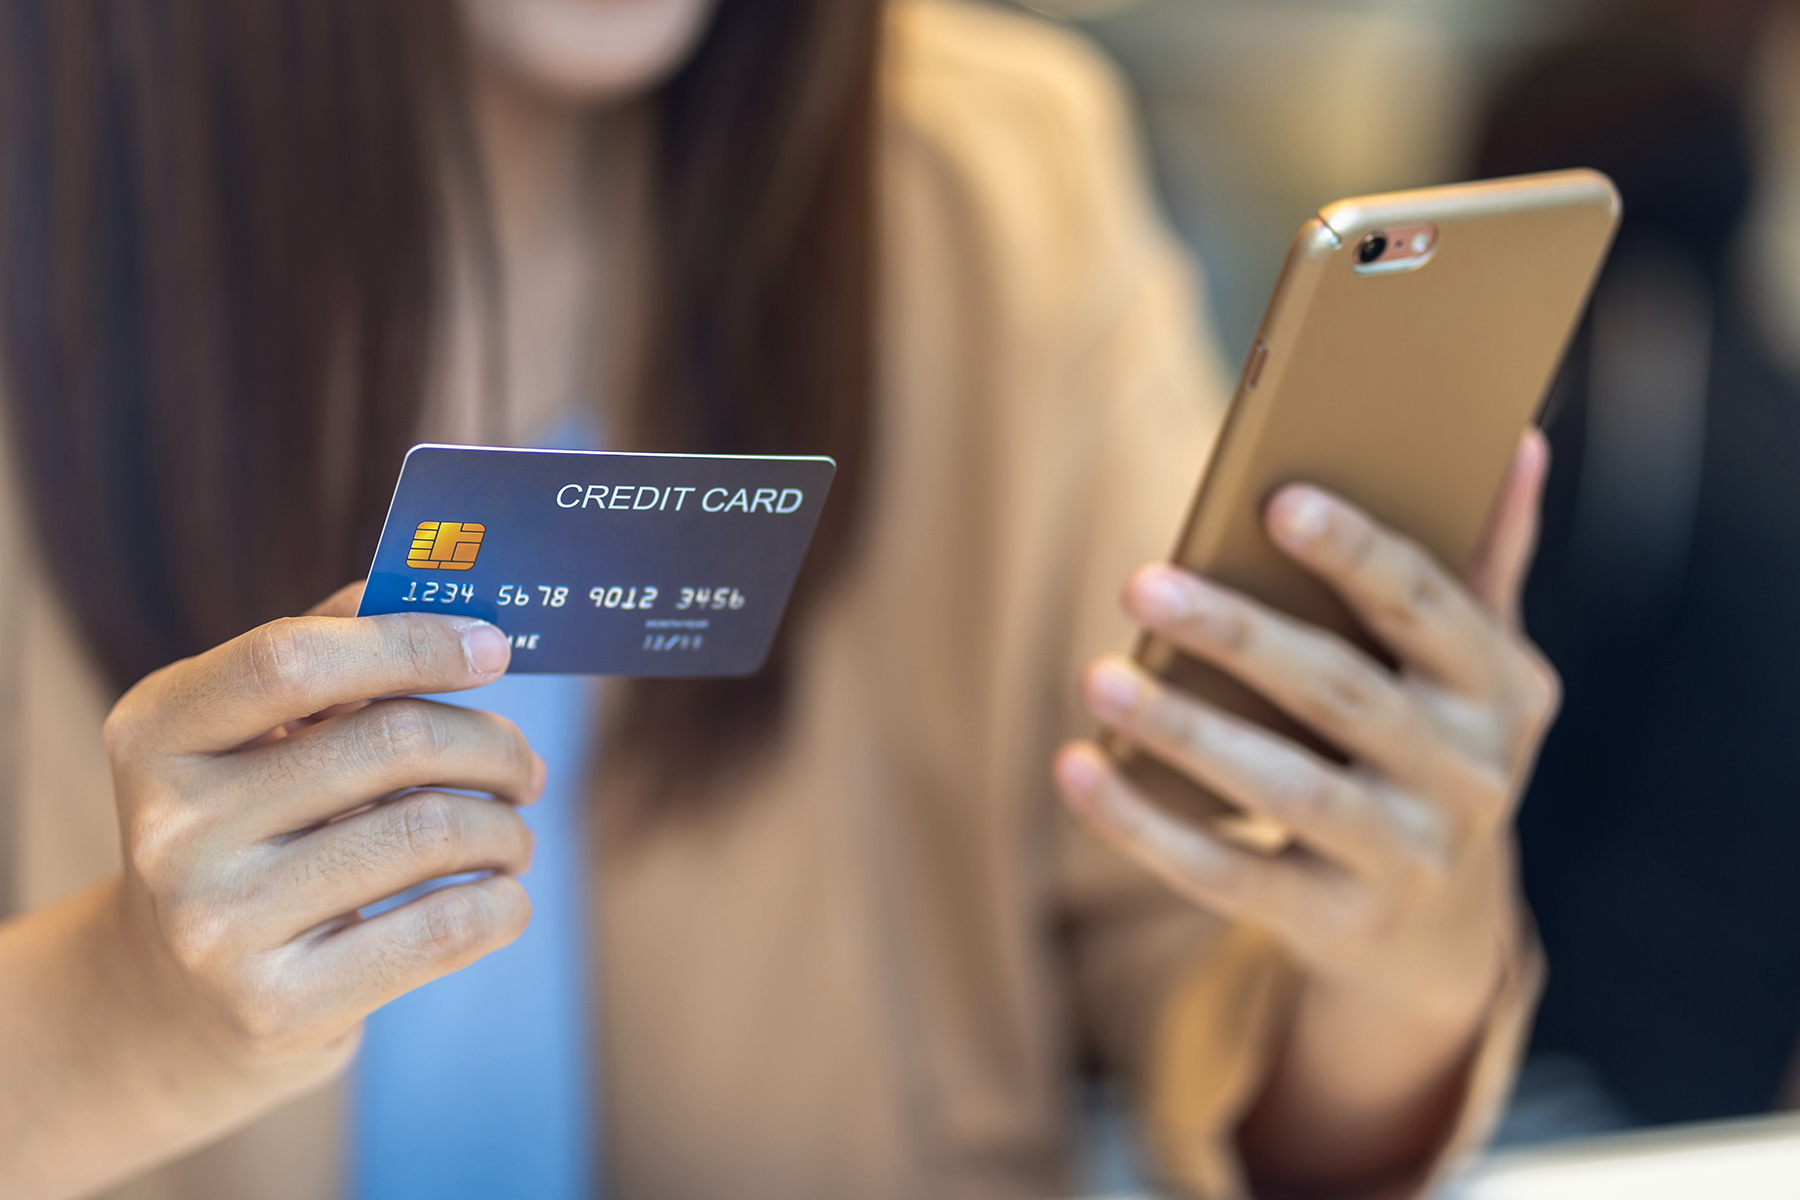 Are Credit Card Rebates Taxable Income